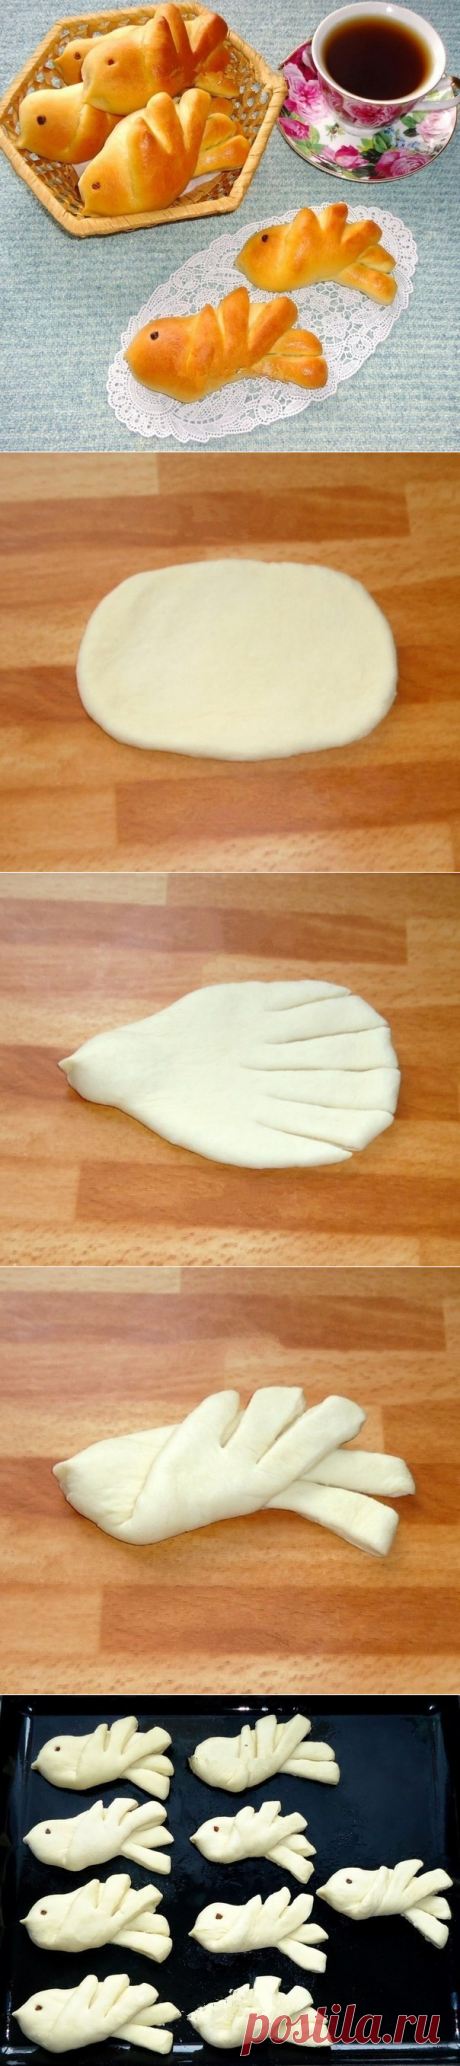 Как приготовить булочки жаворонки - рецепт, ингридиенты и фотографии